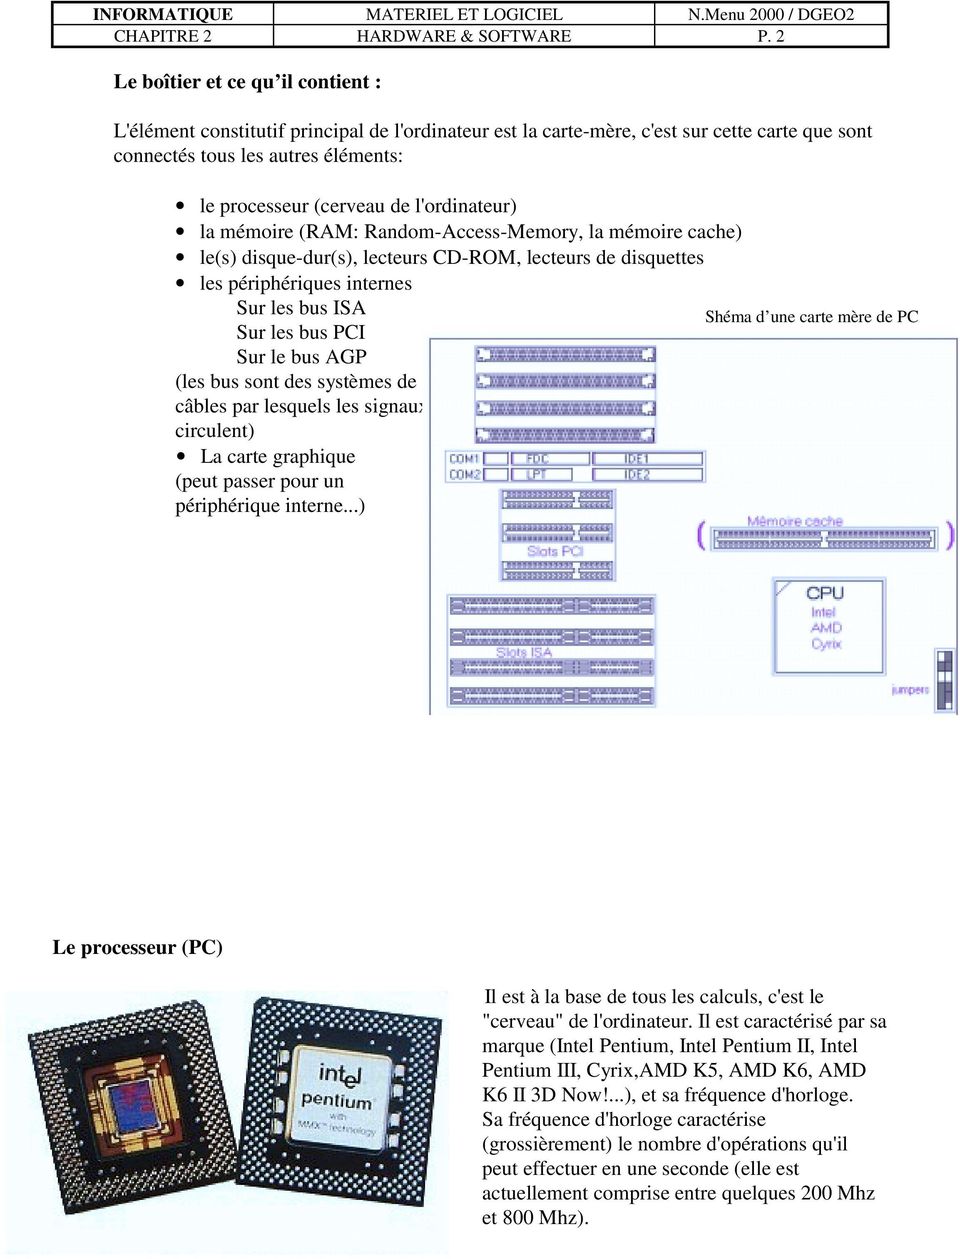 l'ordinateur) la mémoire (RAM: Random-Access-Memory, la mémoire cache) le(s) disque-dur(s), lecteurs CD-ROM, lecteurs de disquettes les périphériques internes Sur les bus ISA Sur les bus PCI Sur le